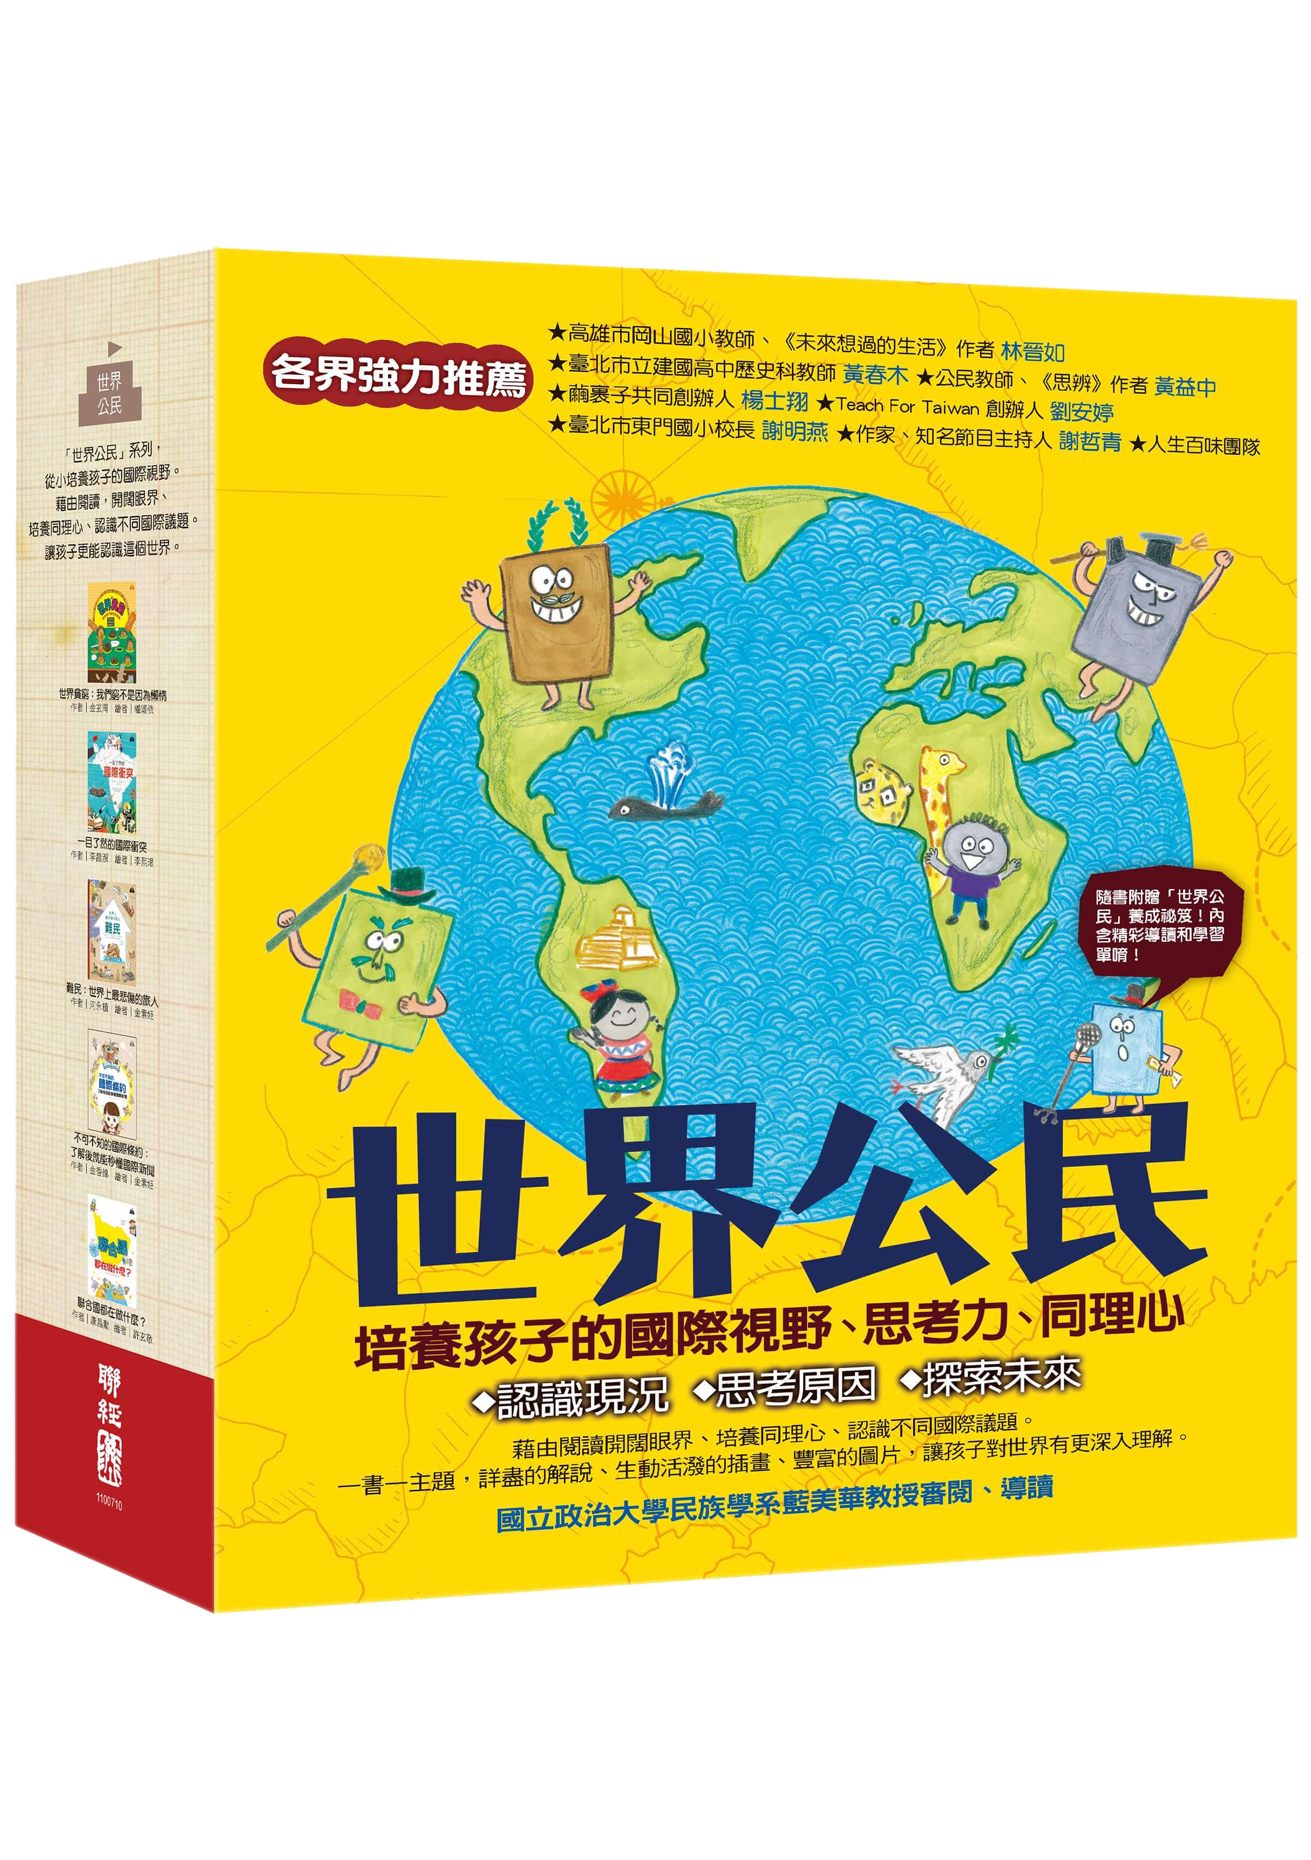 聯經出版事業公司 世界公民 盒裝套書五冊 附贈世界公民學習單